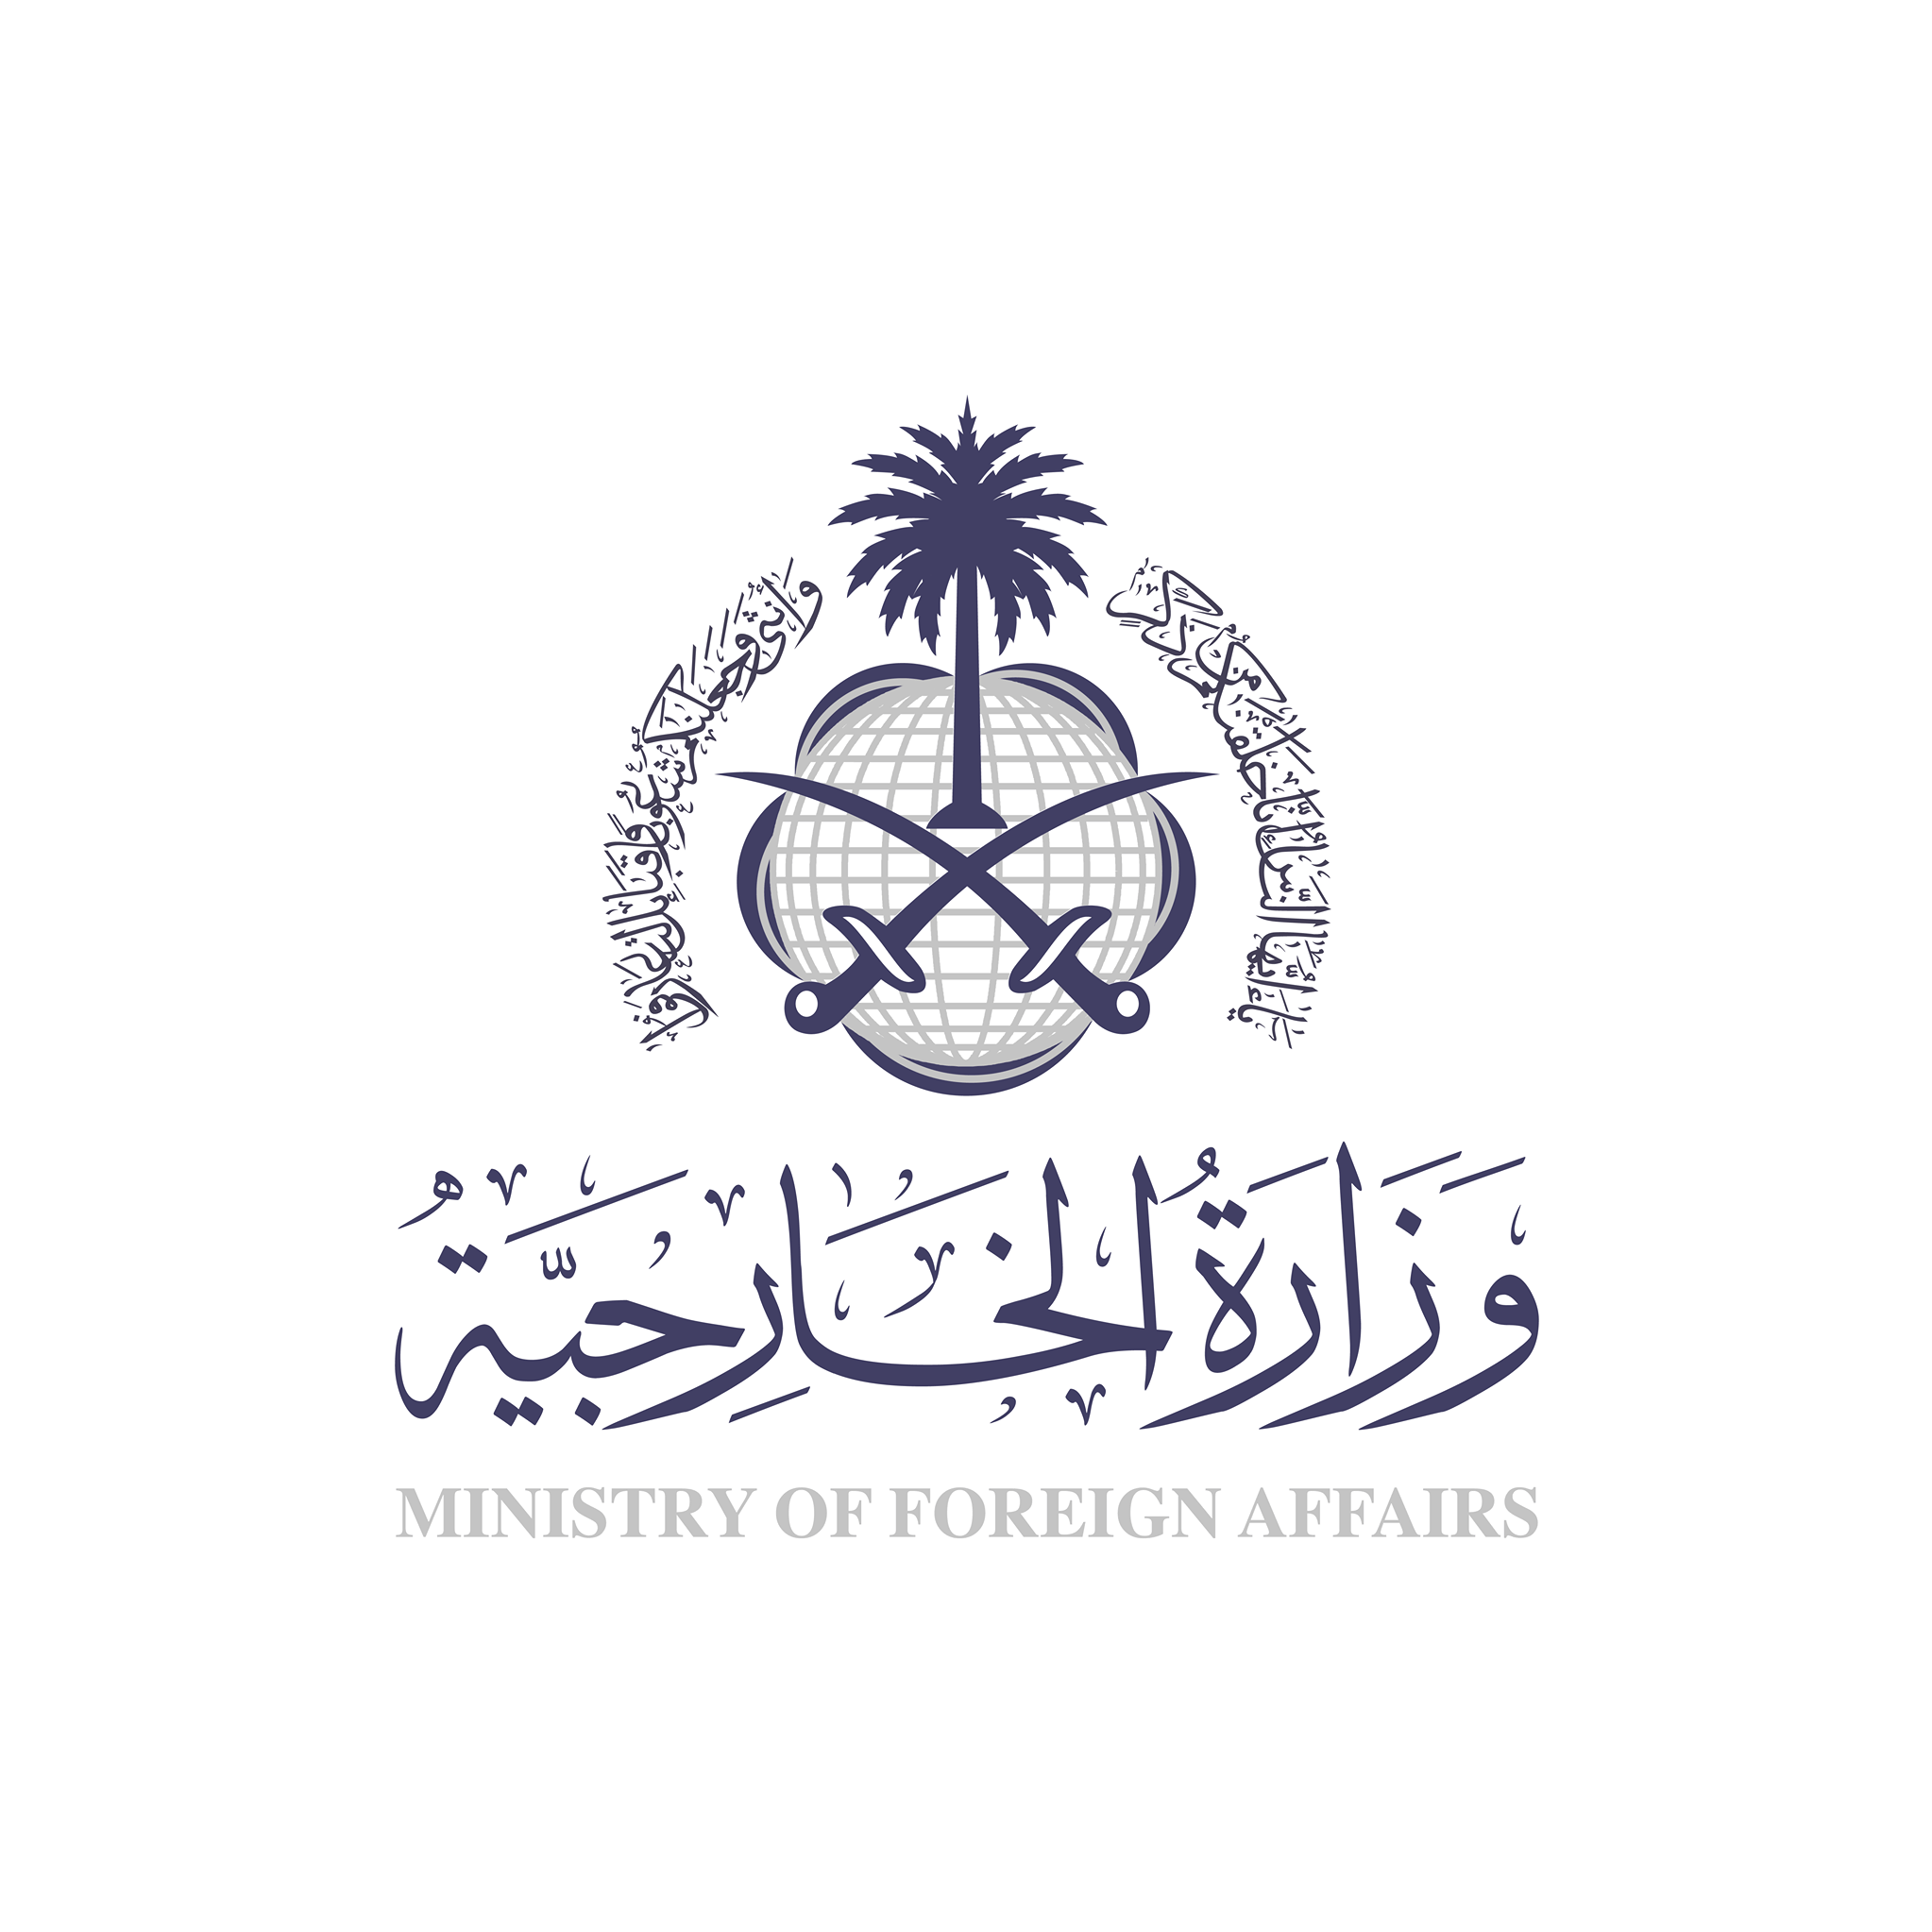 السعودية توجه دعوة لوفد من صنعاء لاستكمال اللقاءات بناء على مبادرة 2021